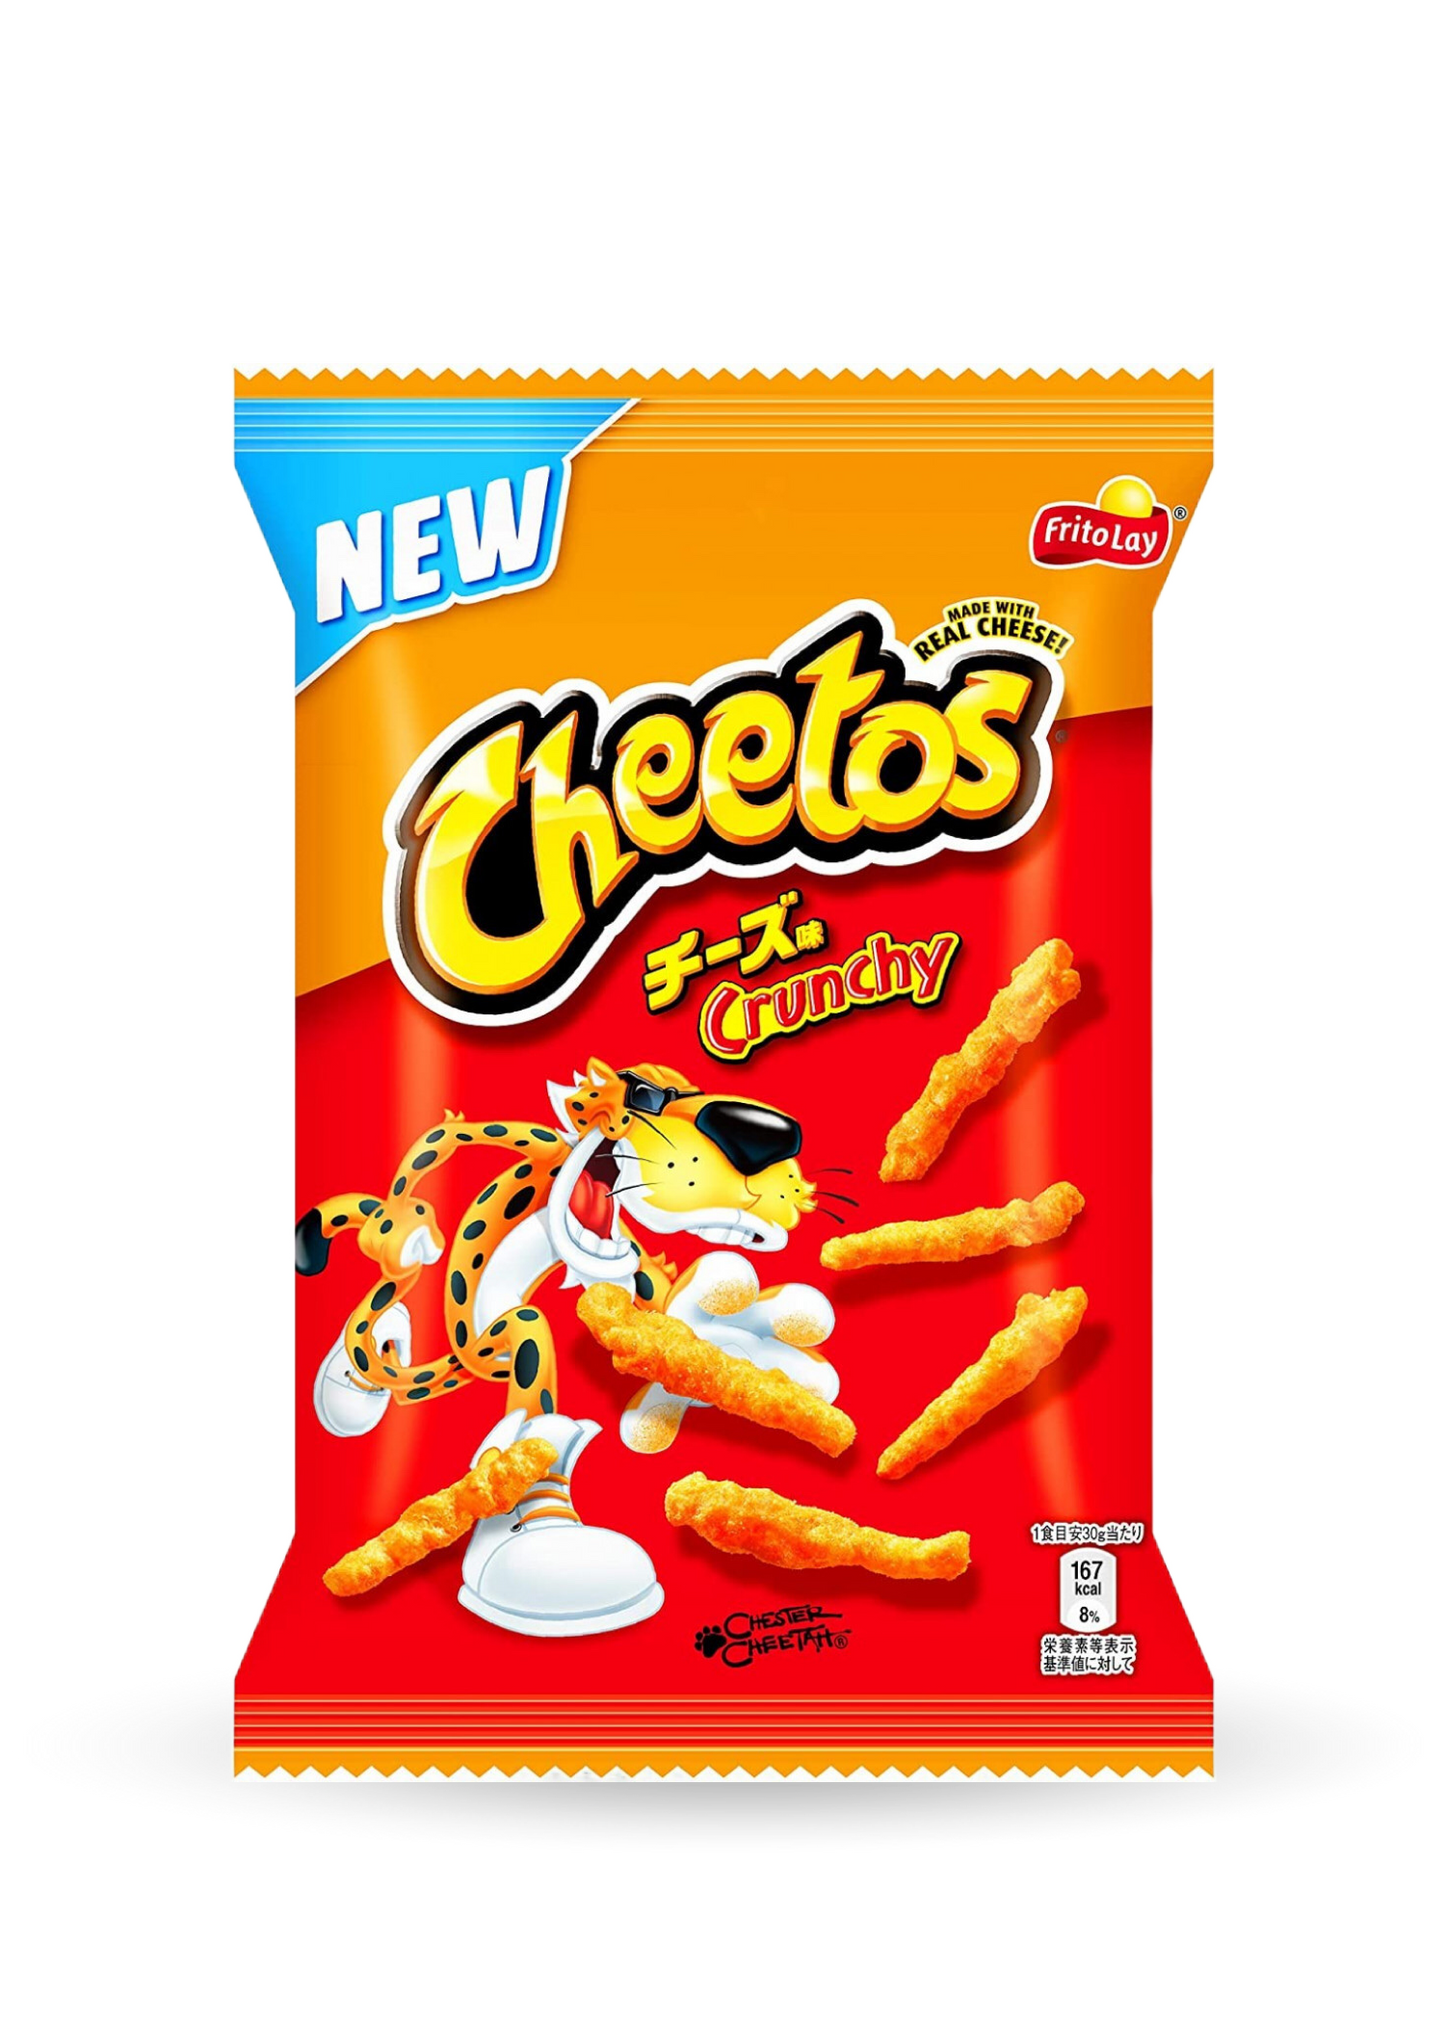 Cheetos | Japan Frito Lay Cheese Crunchy